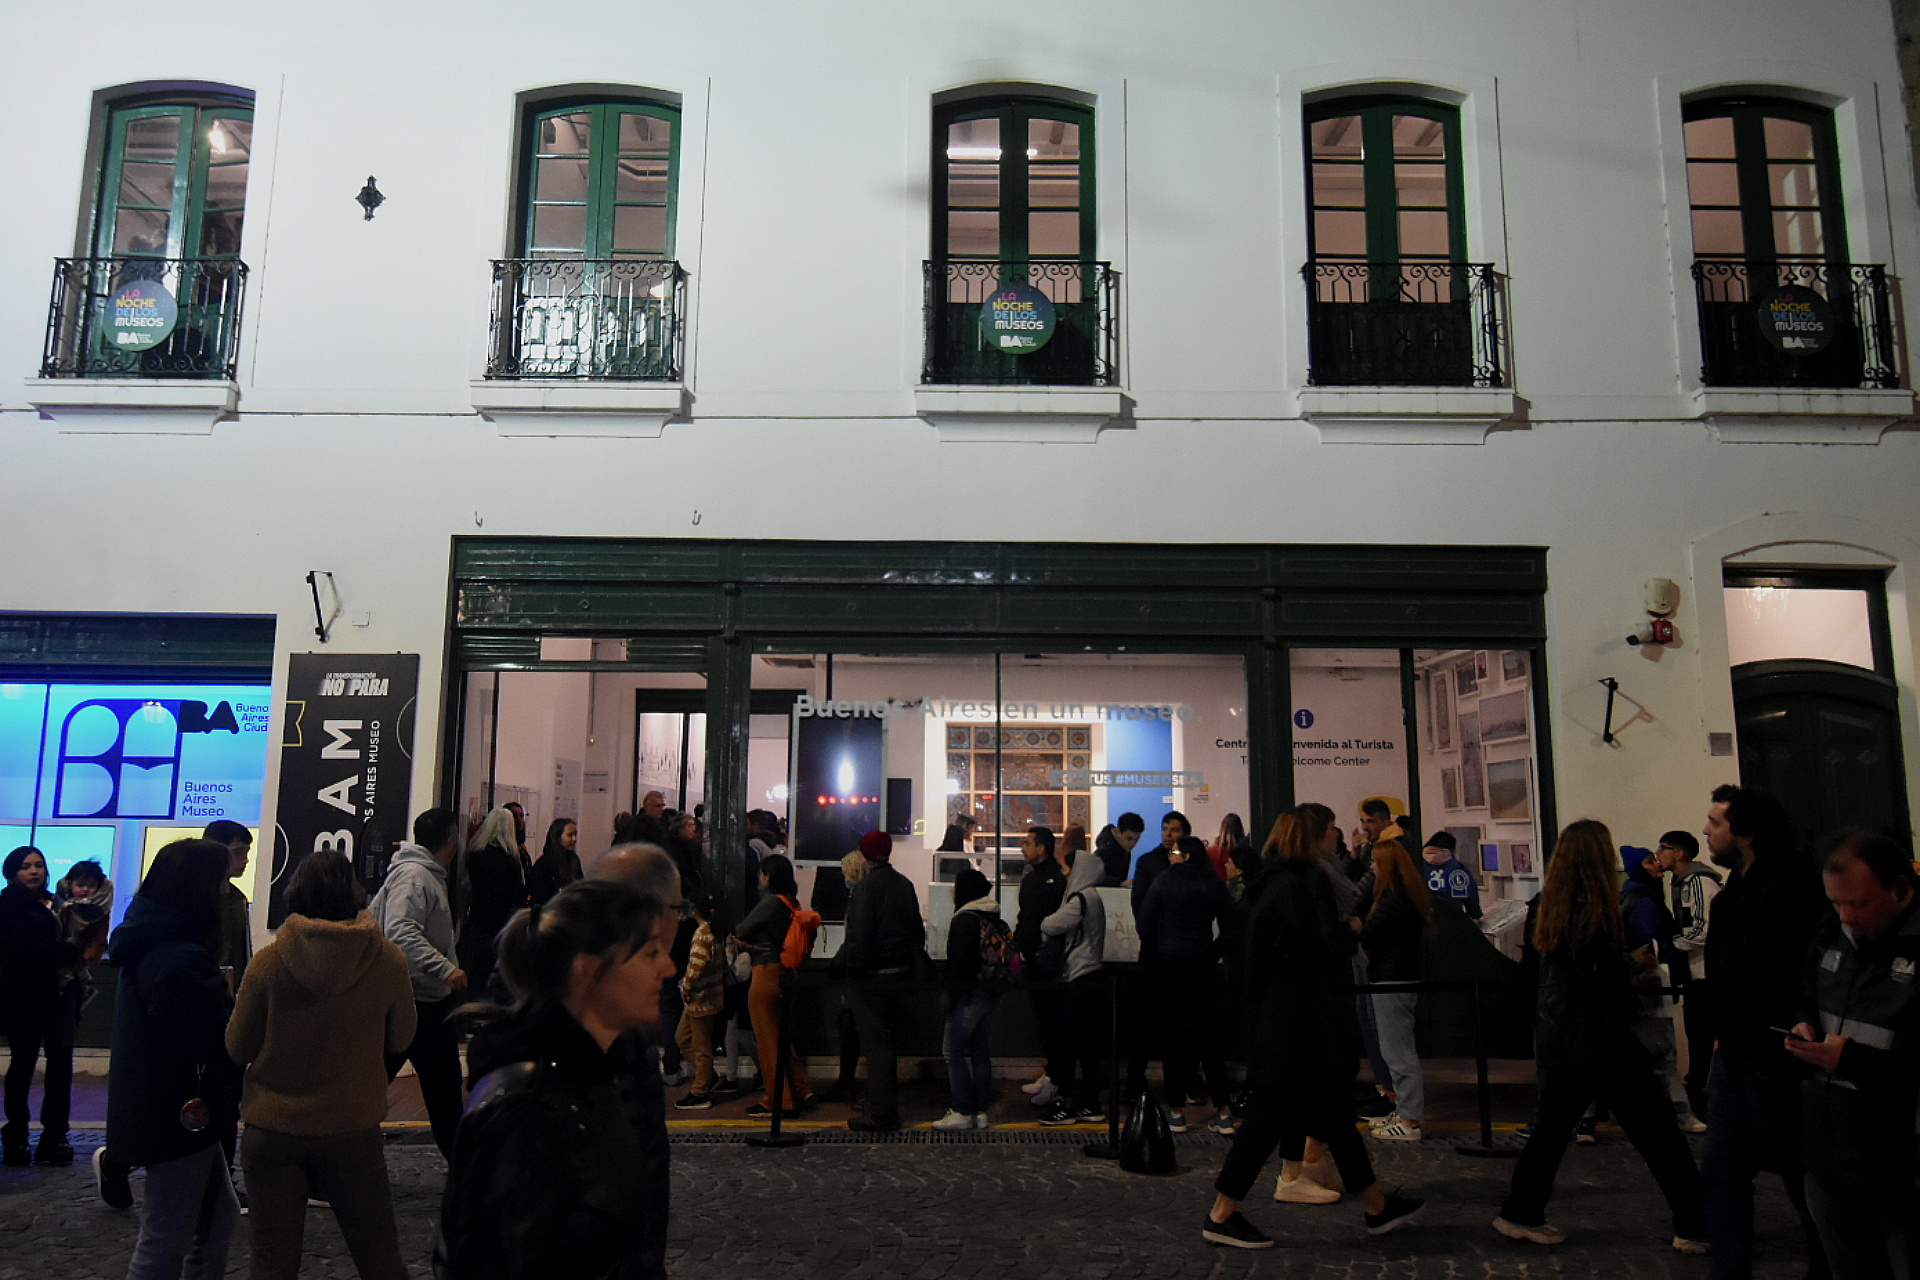 El público circula por la calle Defensa, a punto de ingresar al nuevo BAM Buenos Aires Museo, en pleno Casco Histórico de Buenos Aires (Foto: Nicolas Stulberg)